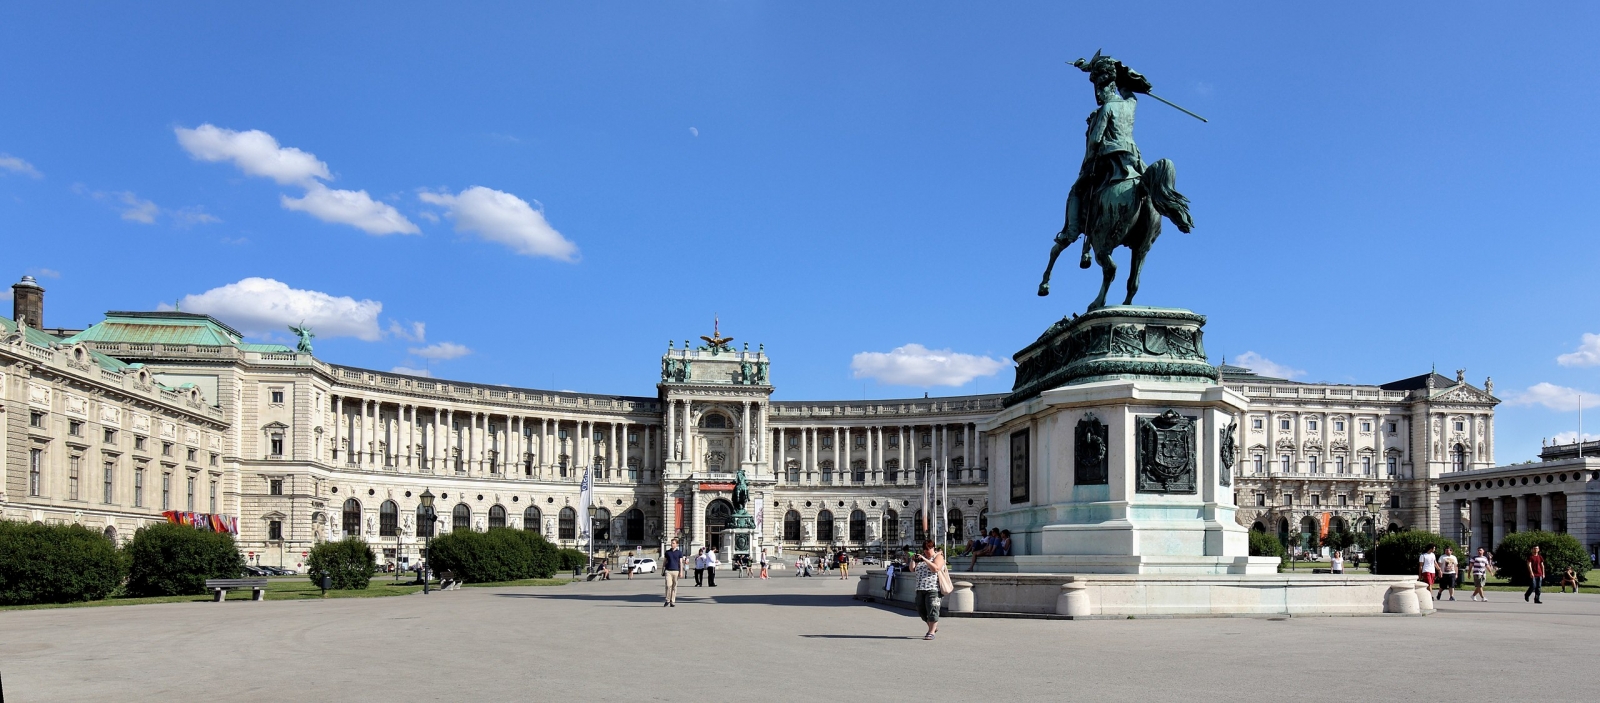 位於奧地利首都維也納的霍夫堡宮殿(Hofburg) 自1279年起成為奧地利公爵的駐地，曾是哈布斯堡王朝治下奧地利帝國與奧匈帝國冬宮。